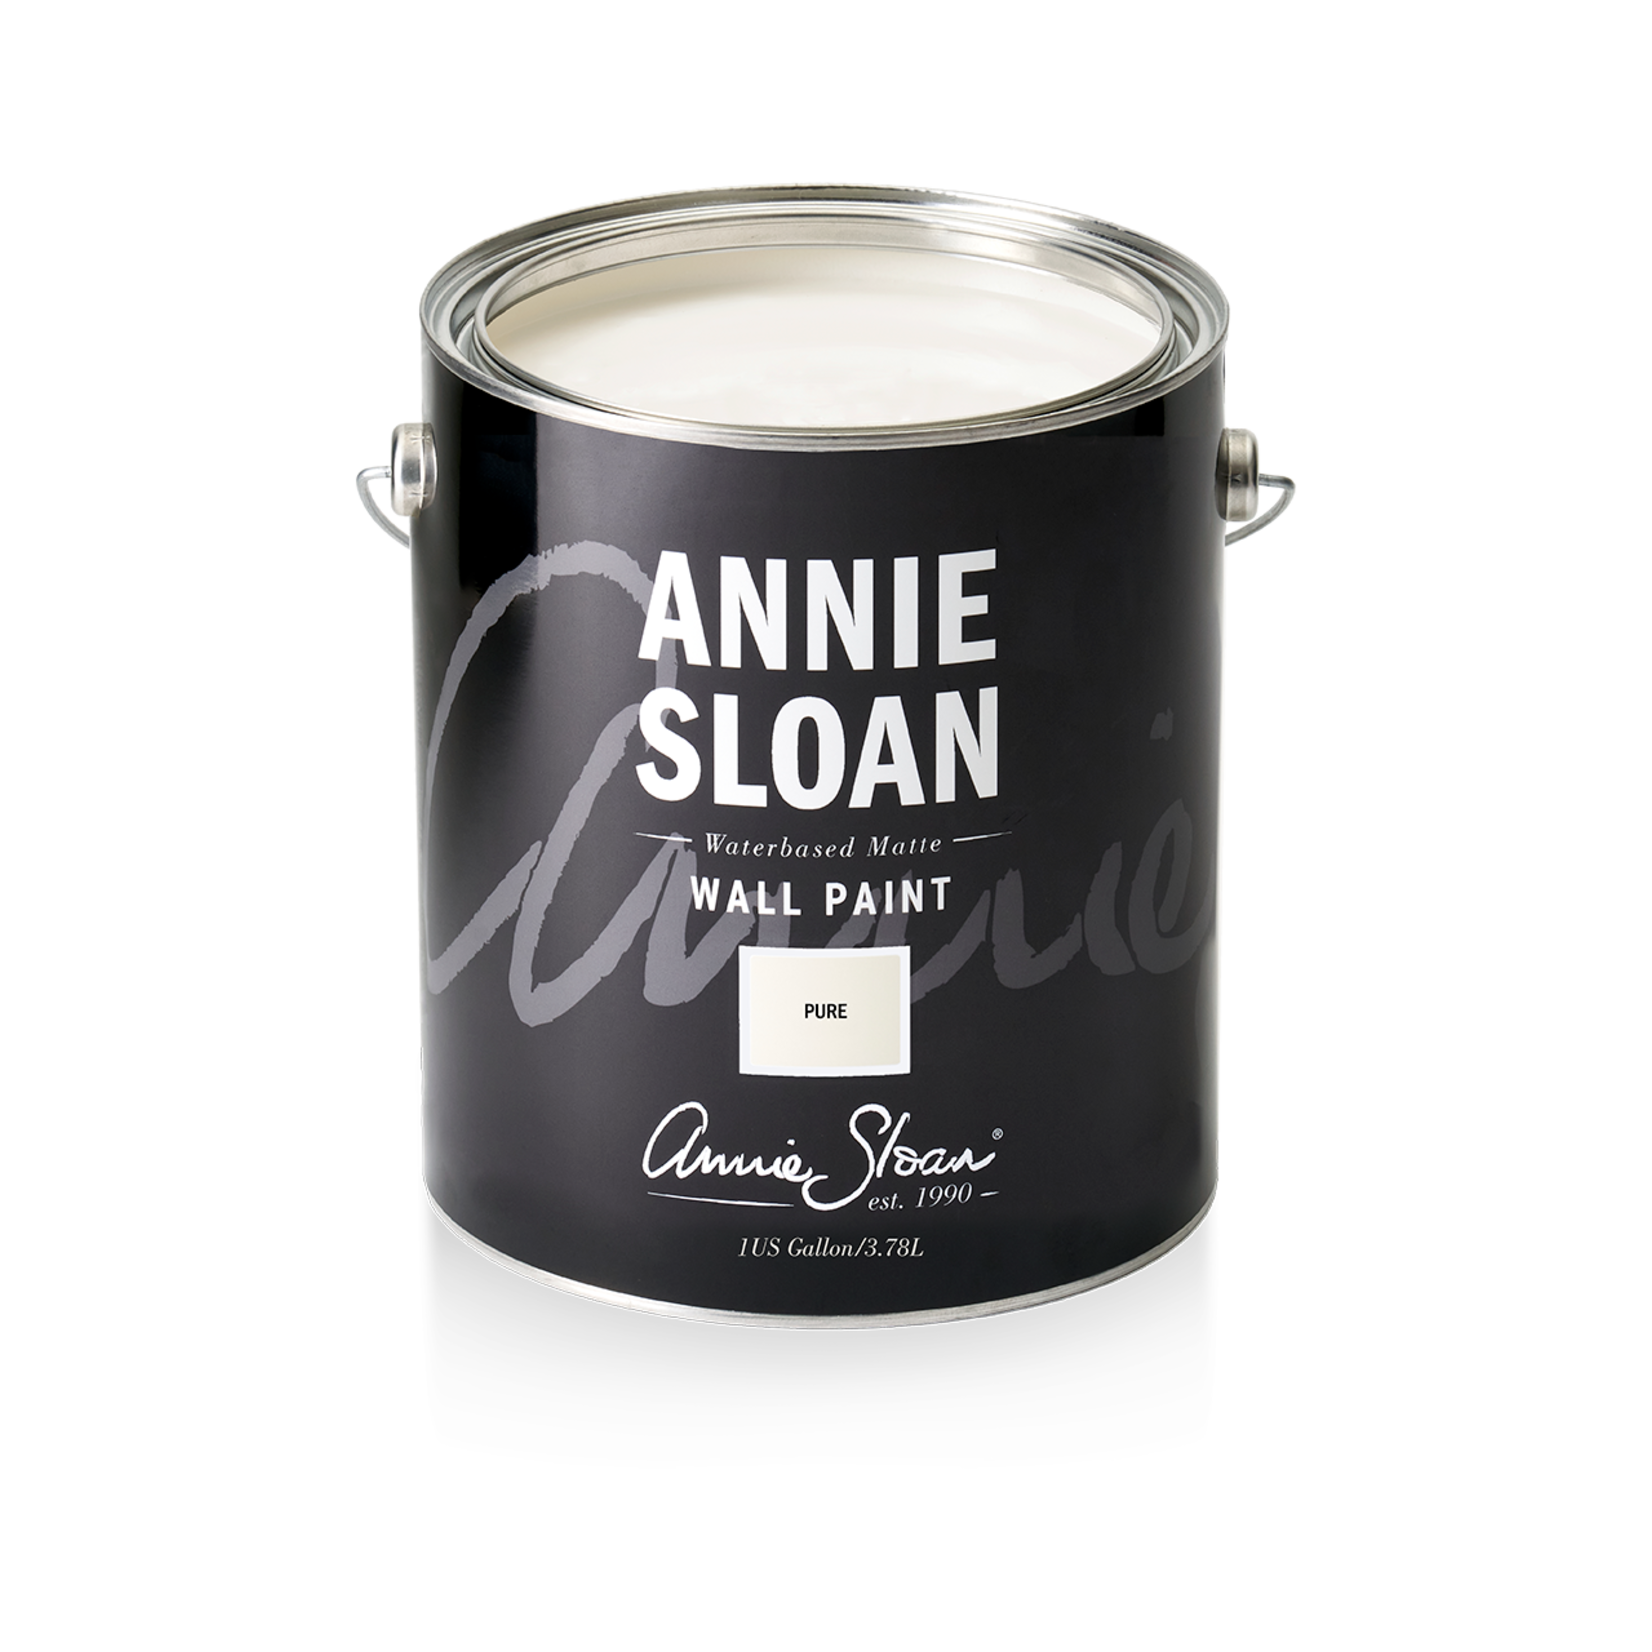 Annie Sloan Annie Sloan Wall Paint 1 Gallon Pure